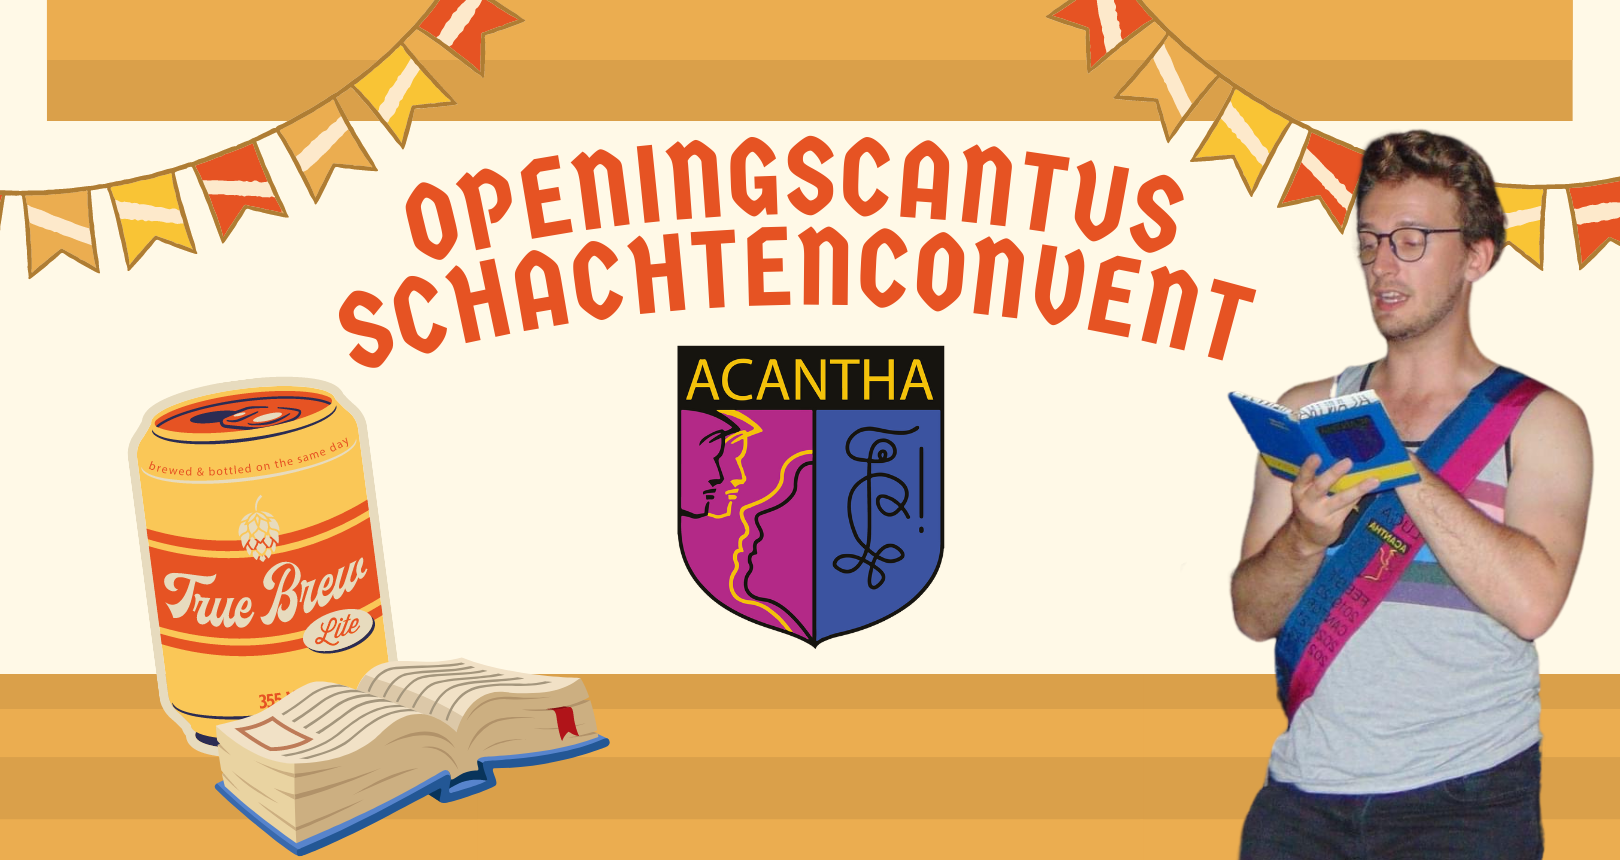 Openingscangtus & Schachtenkonvent